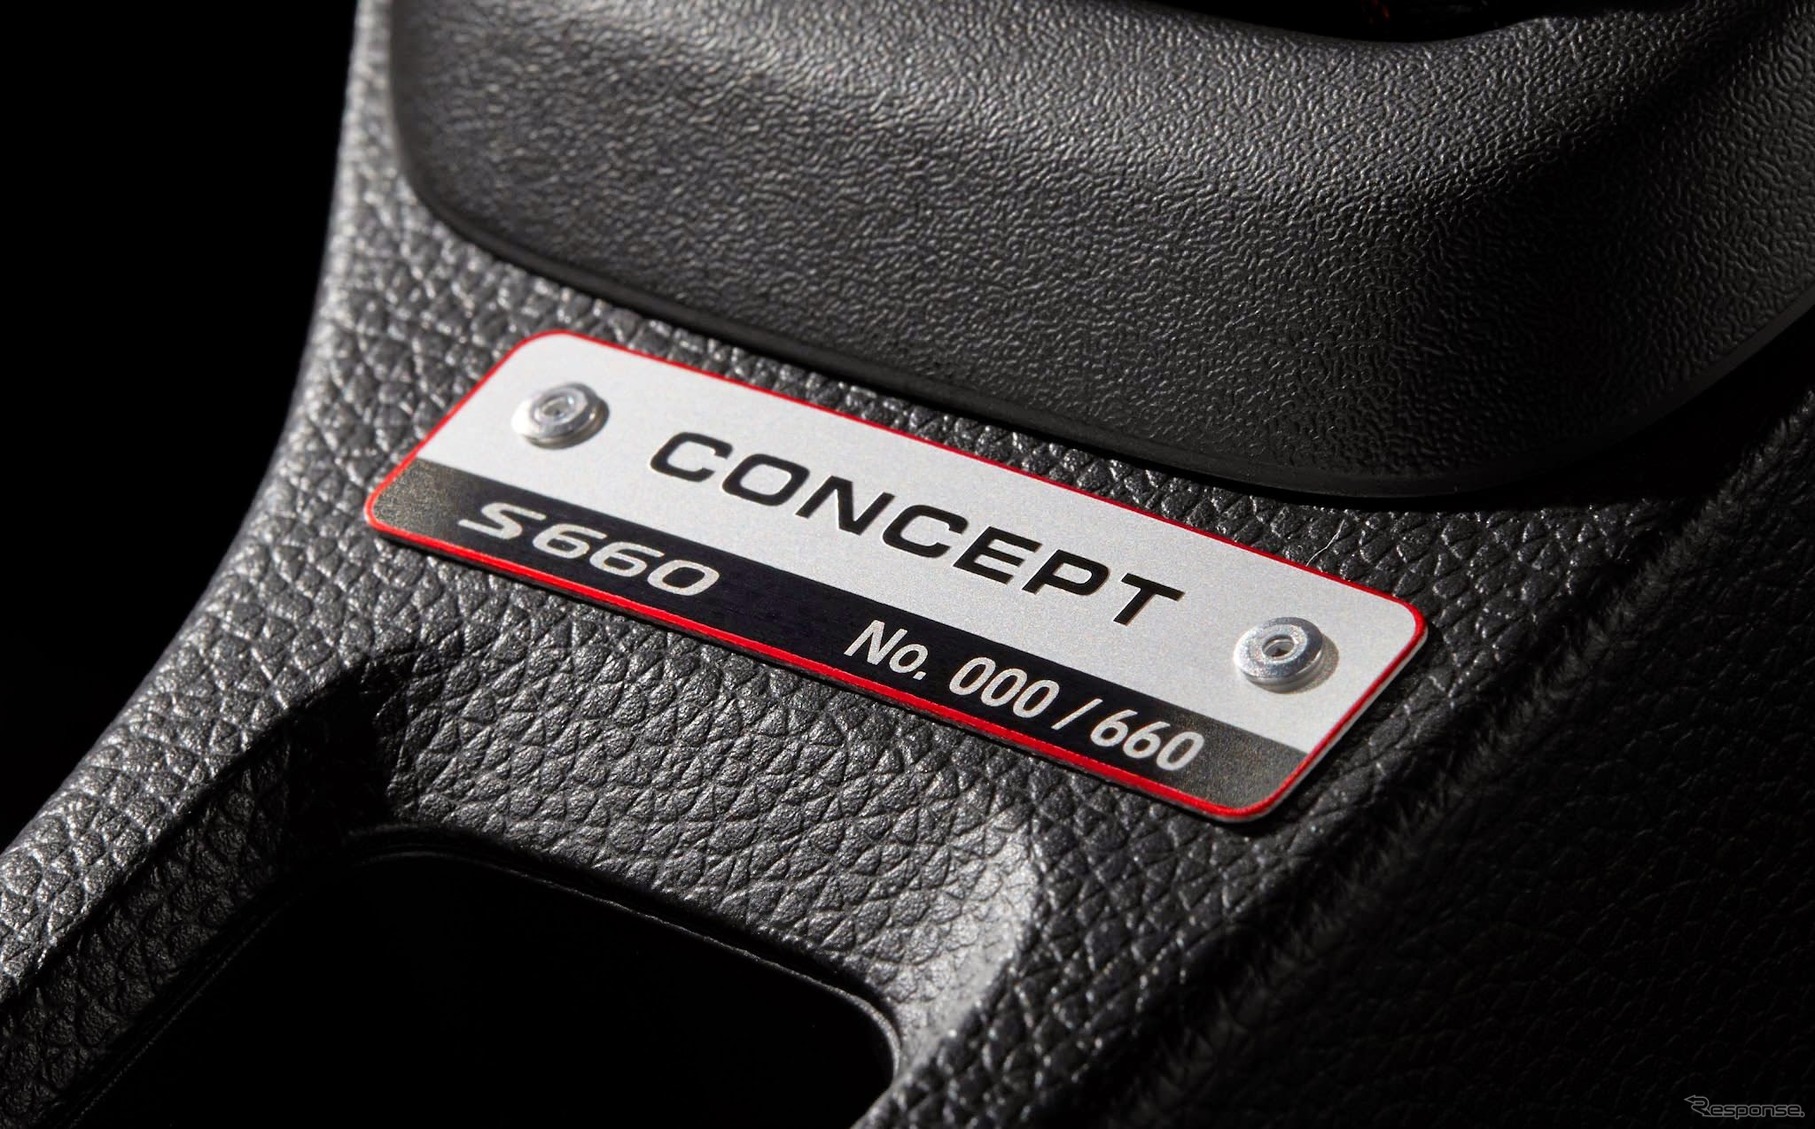 ホンダ S660 コンセプトエディション シリアルナンバープレート